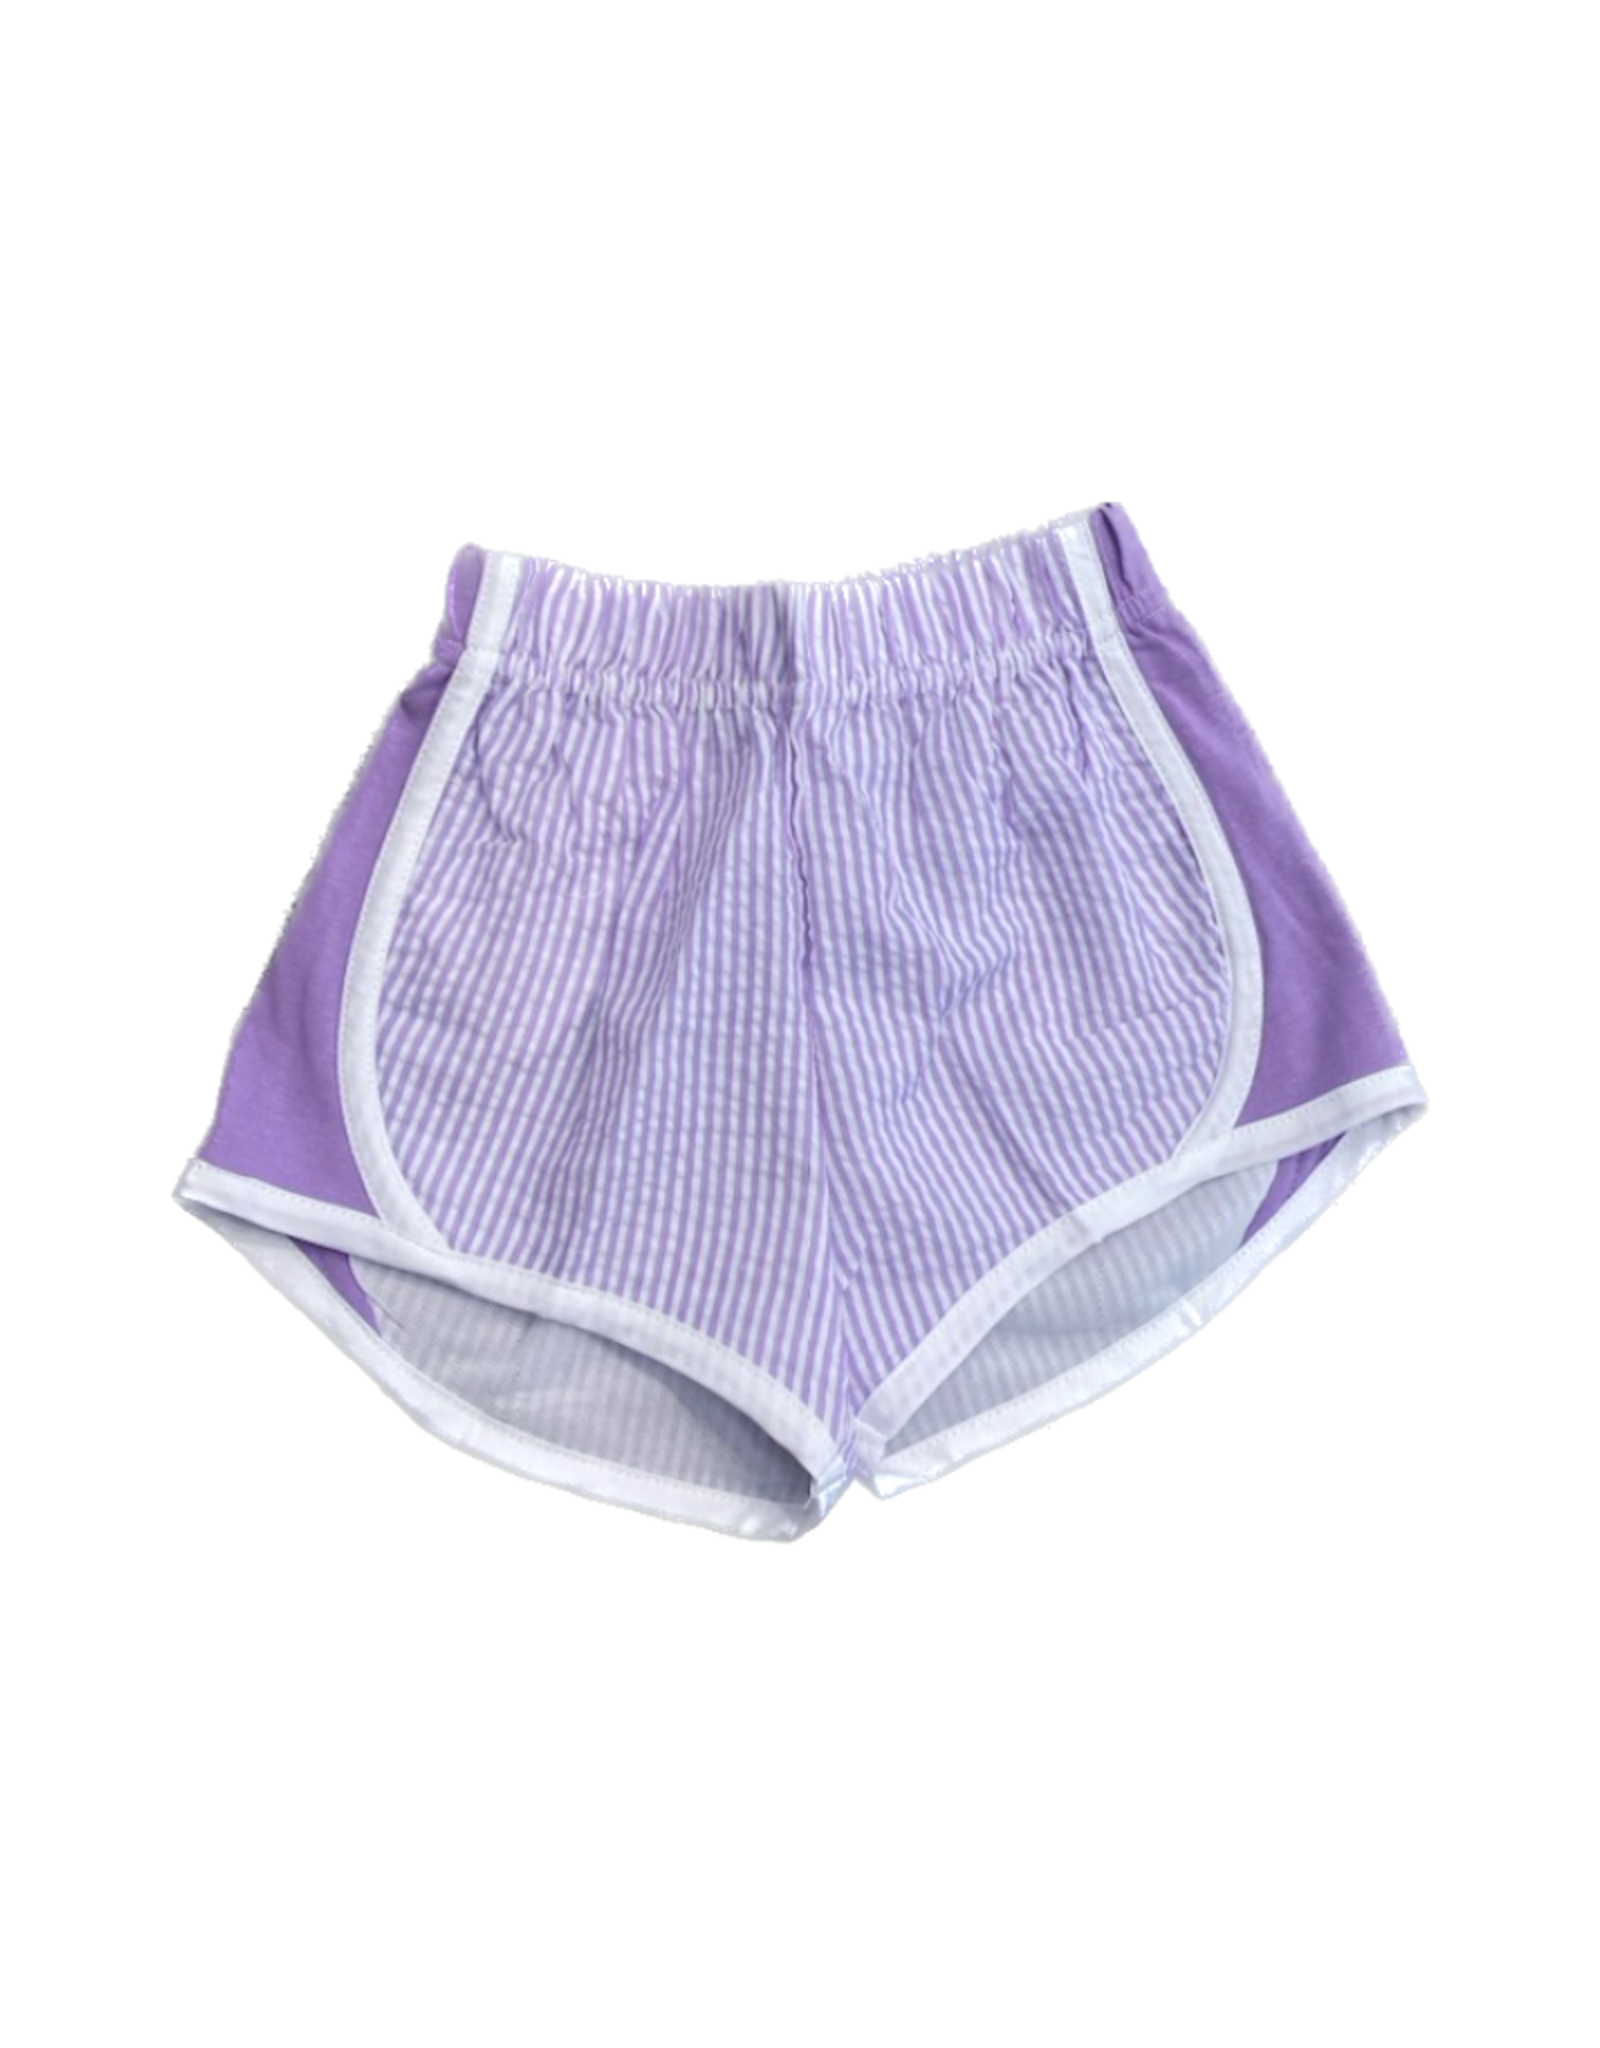 Lavender Seersucker Wind Shorts